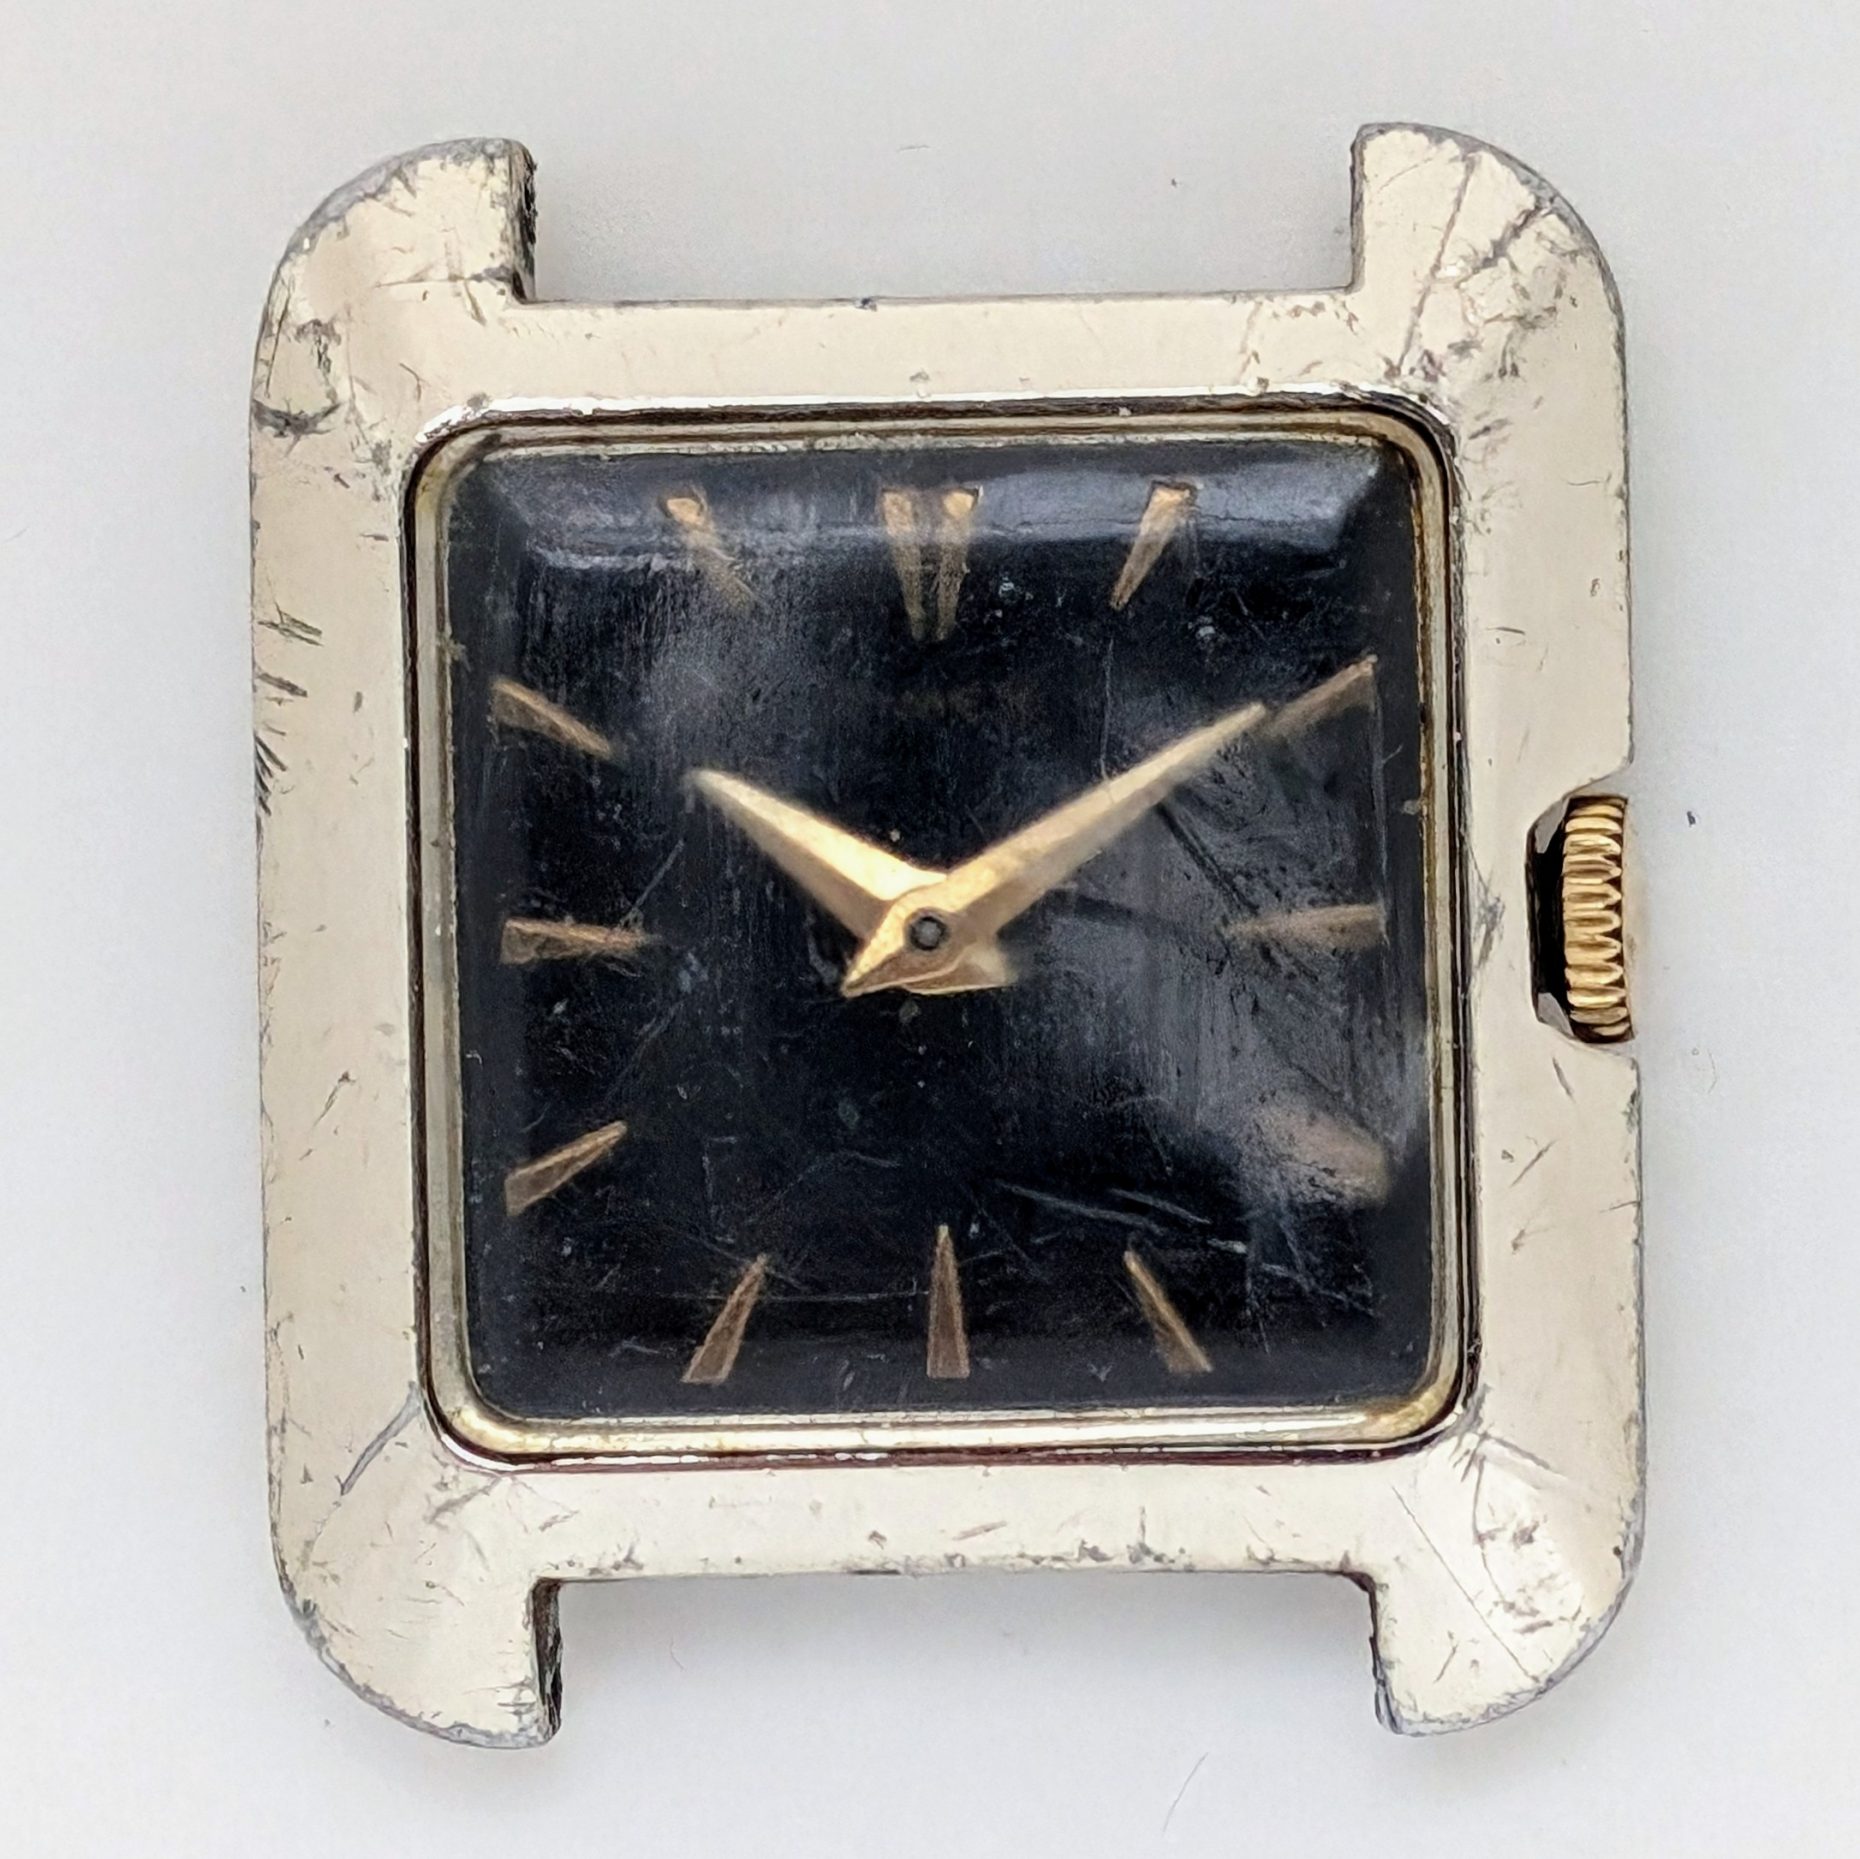 Timex Monroe 1959 Ref. 1080 2259